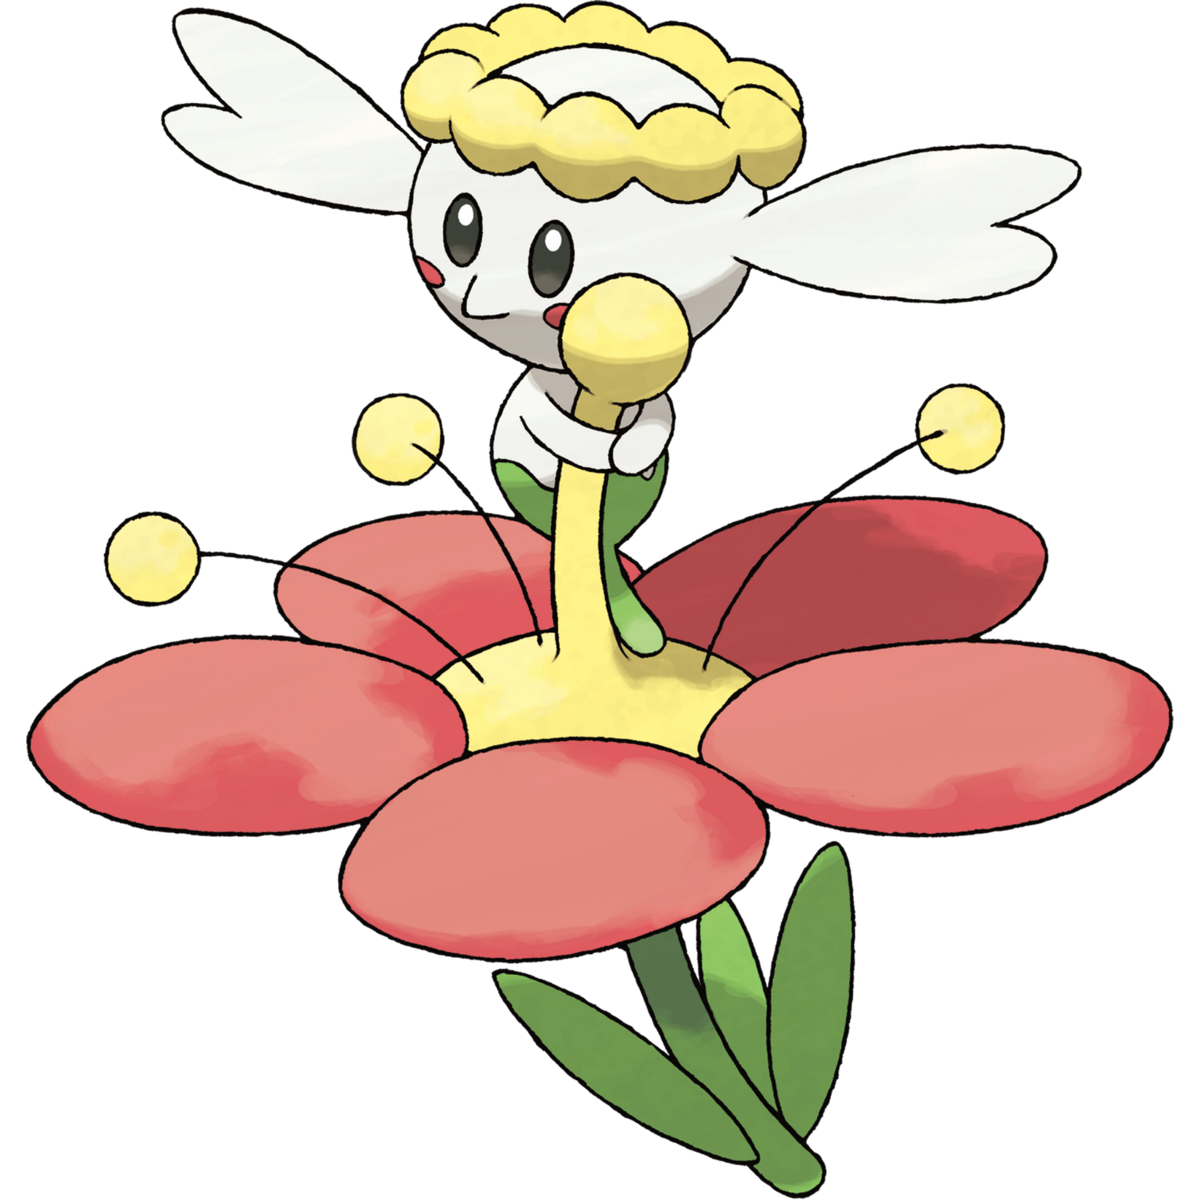 Flabébé (Pokémon) - Bulbapedia, the community-driven Pokémon encyclopedia